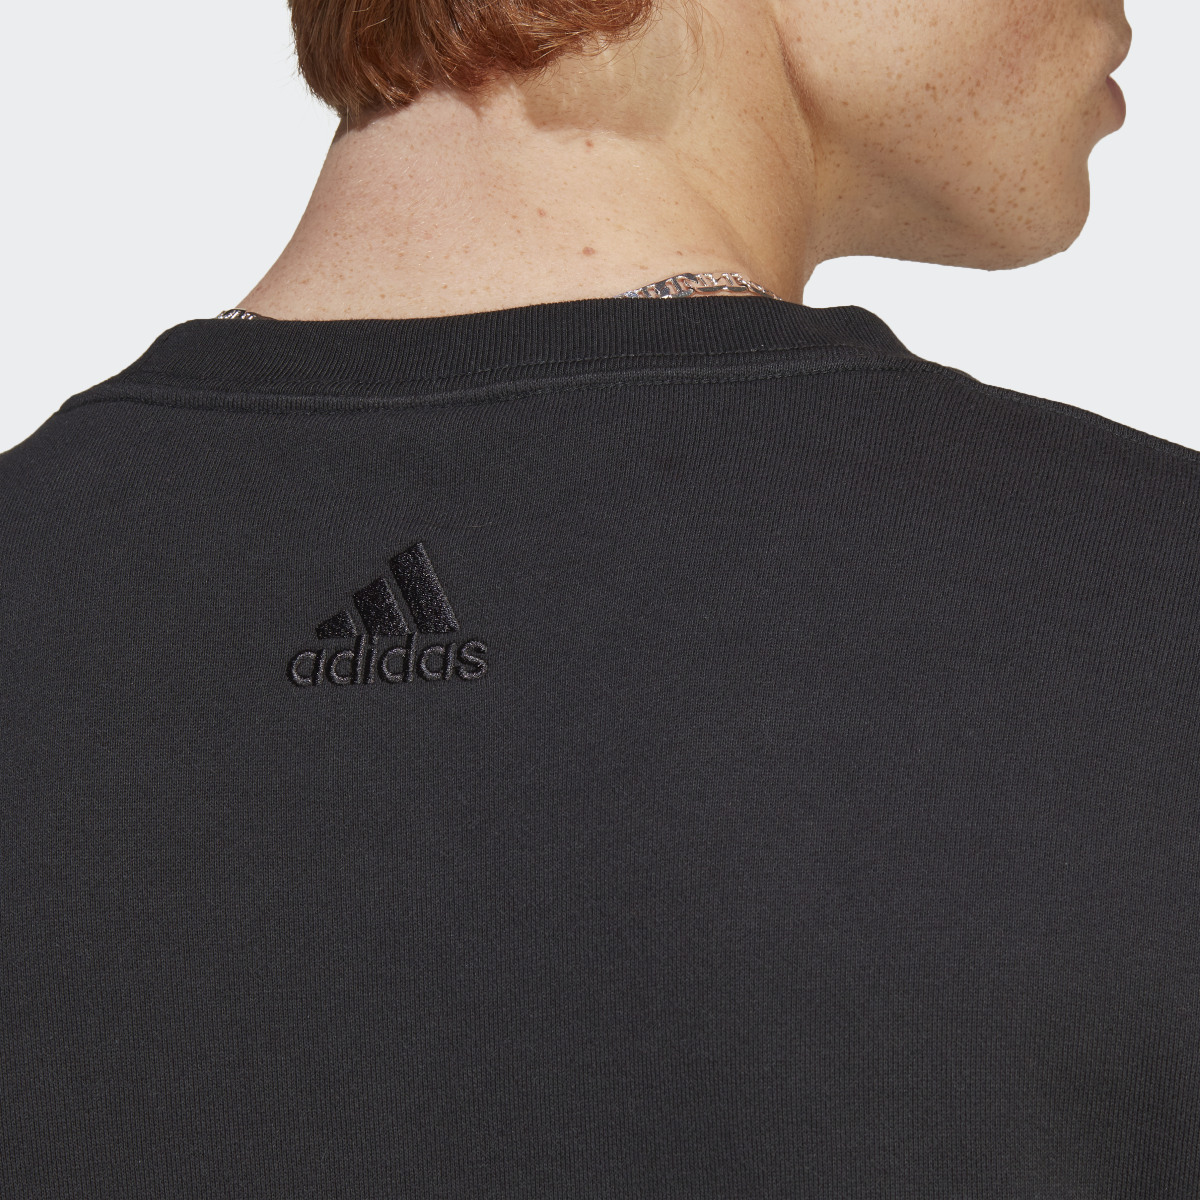 Adidas Essentials French Terry Big Logo Sweatshirt. 8